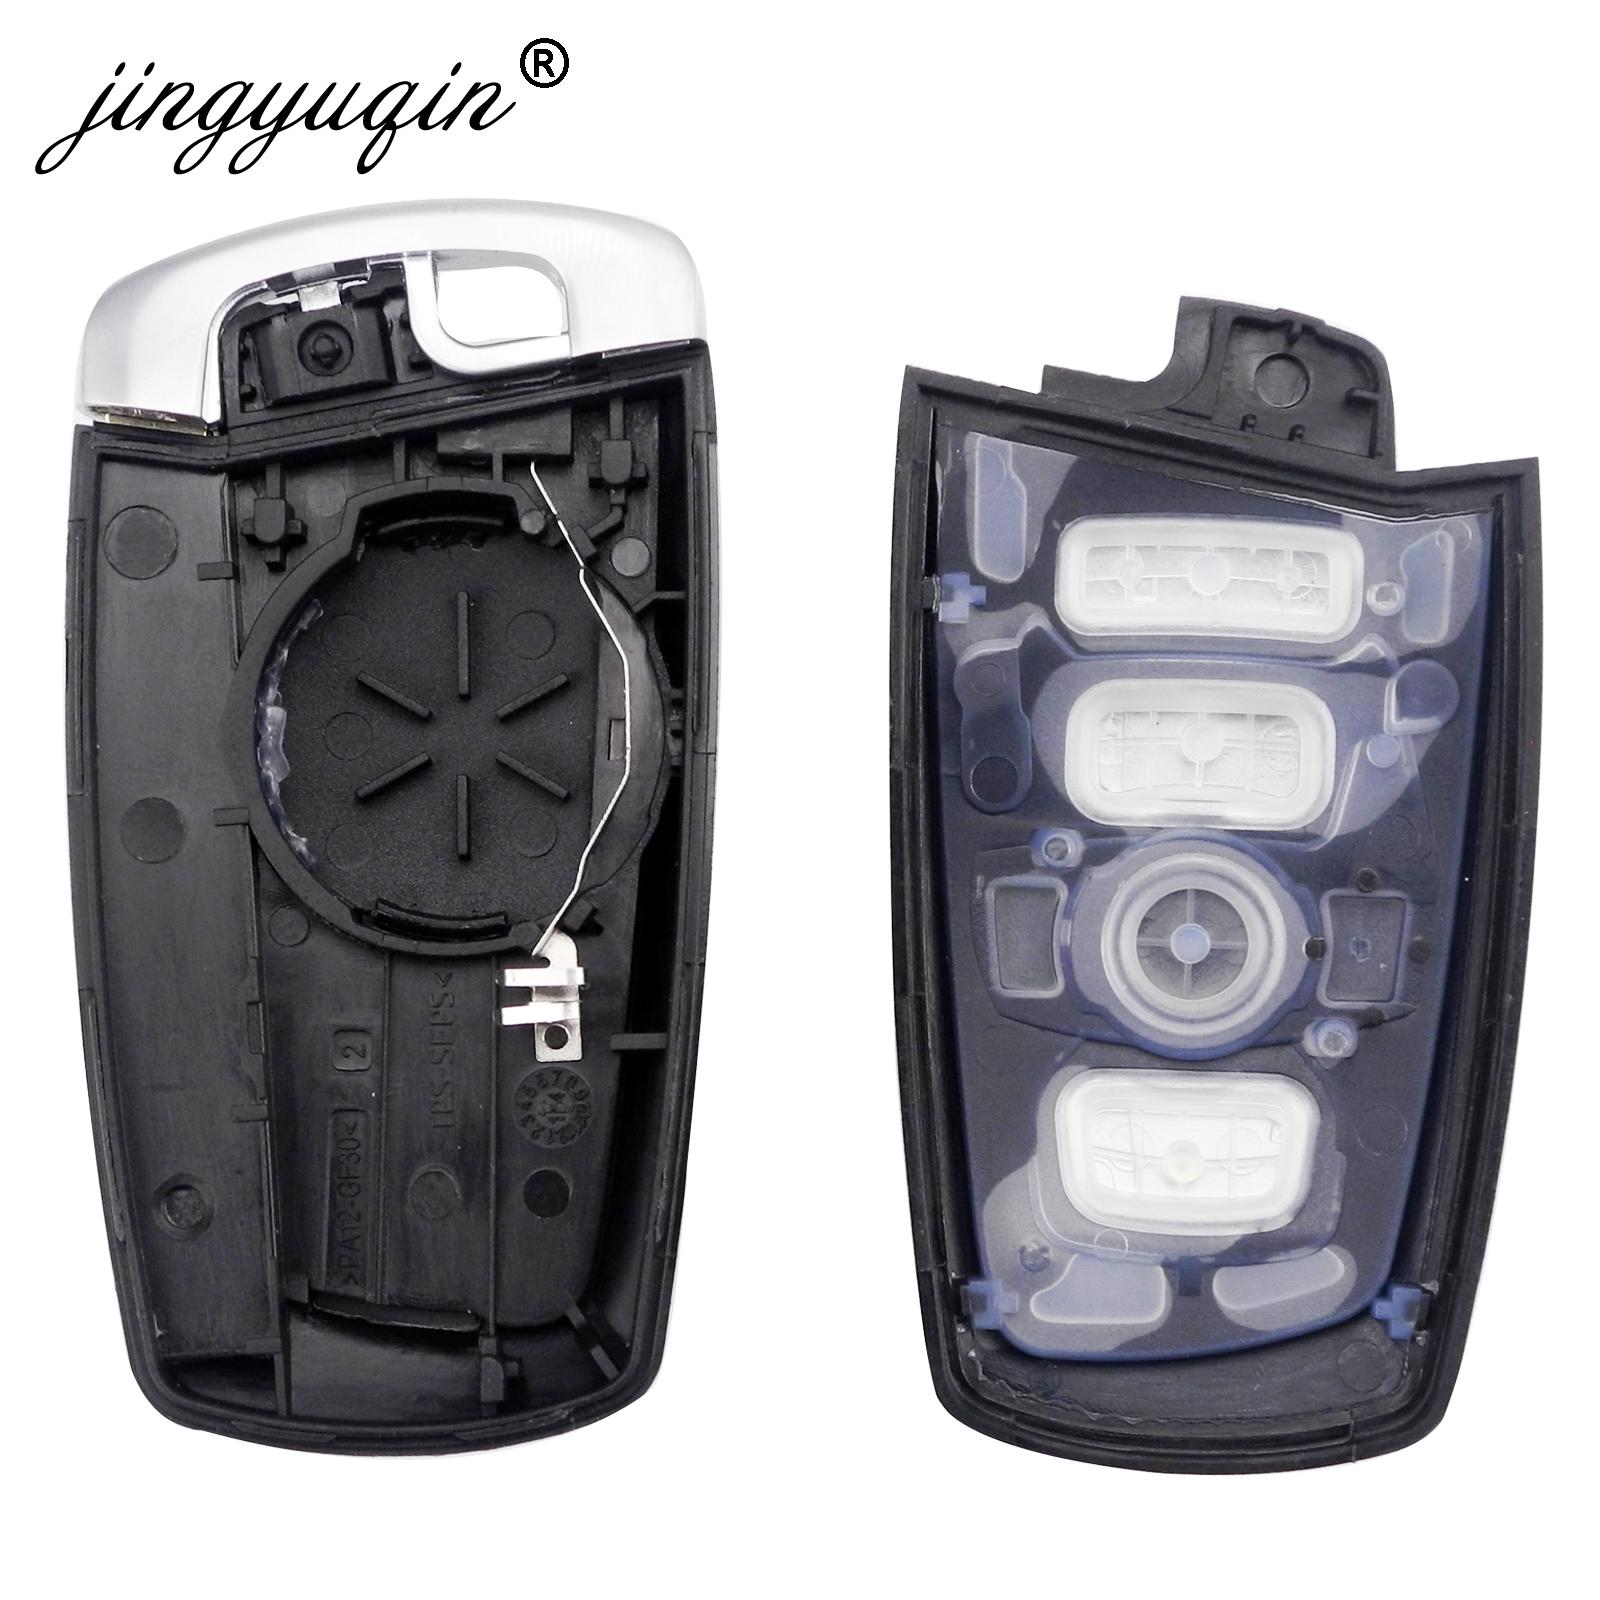 Изображение товара: Jingyuqin 3/4 кнопка дистанционного смарт-ключа чехол Корпус для BMW 1 3 5 6 7 F серии E90 E91 E92 E60 E61 X1 X3 X4 X5 X6 чехол для ключей